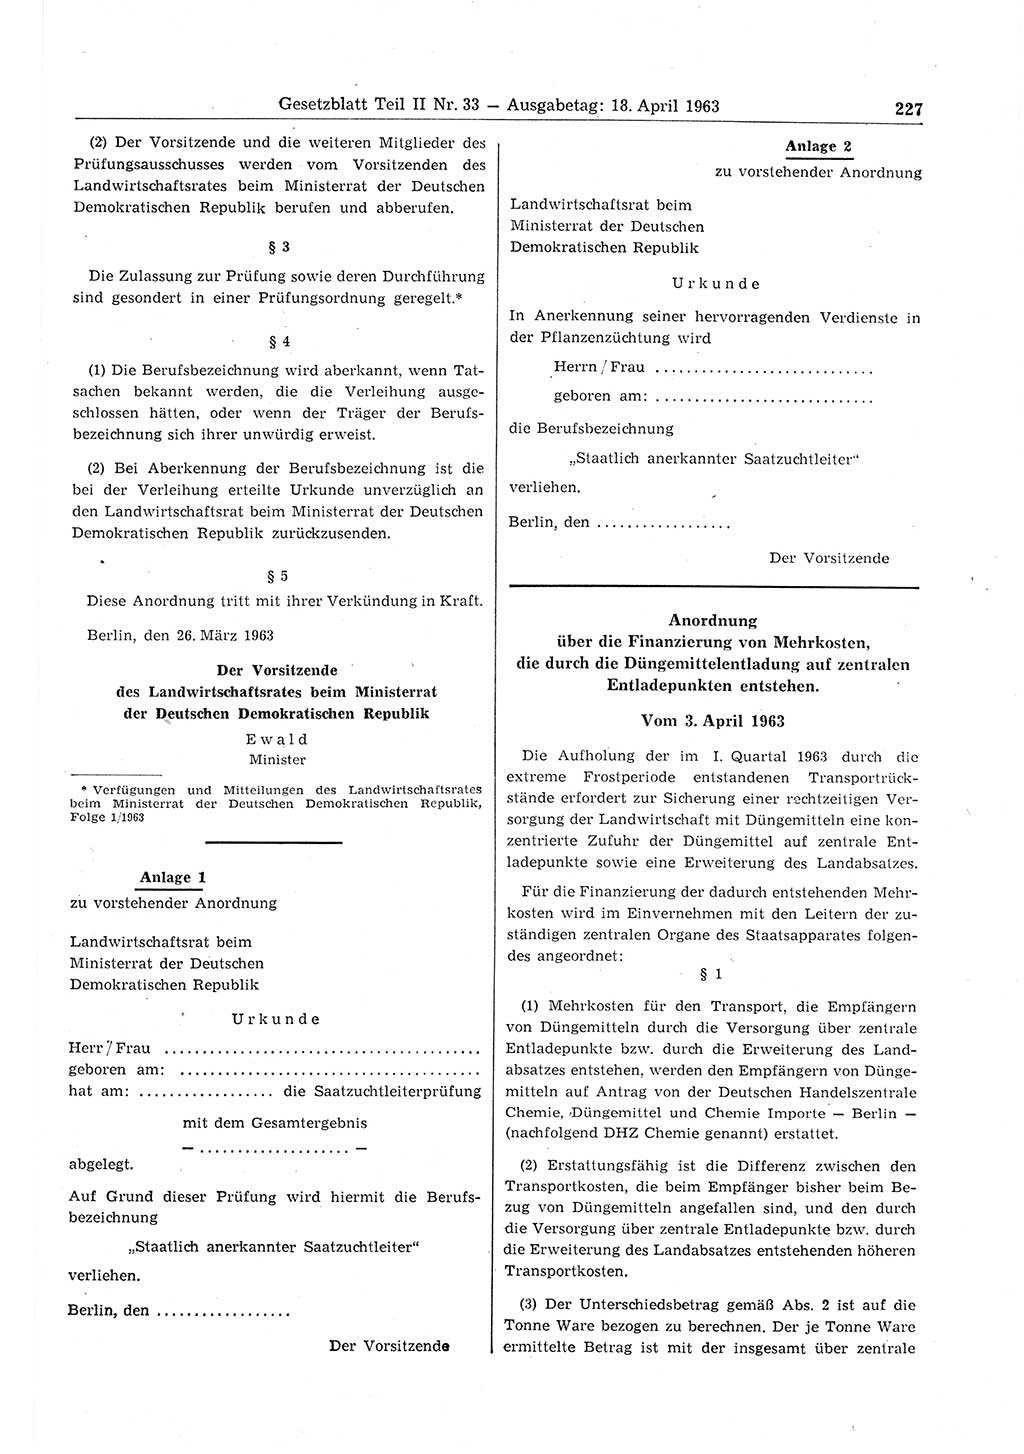 Gesetzblatt (GBl.) der Deutschen Demokratischen Republik (DDR) Teil ⅠⅠ 1963, Seite 227 (GBl. DDR ⅠⅠ 1963, S. 227)